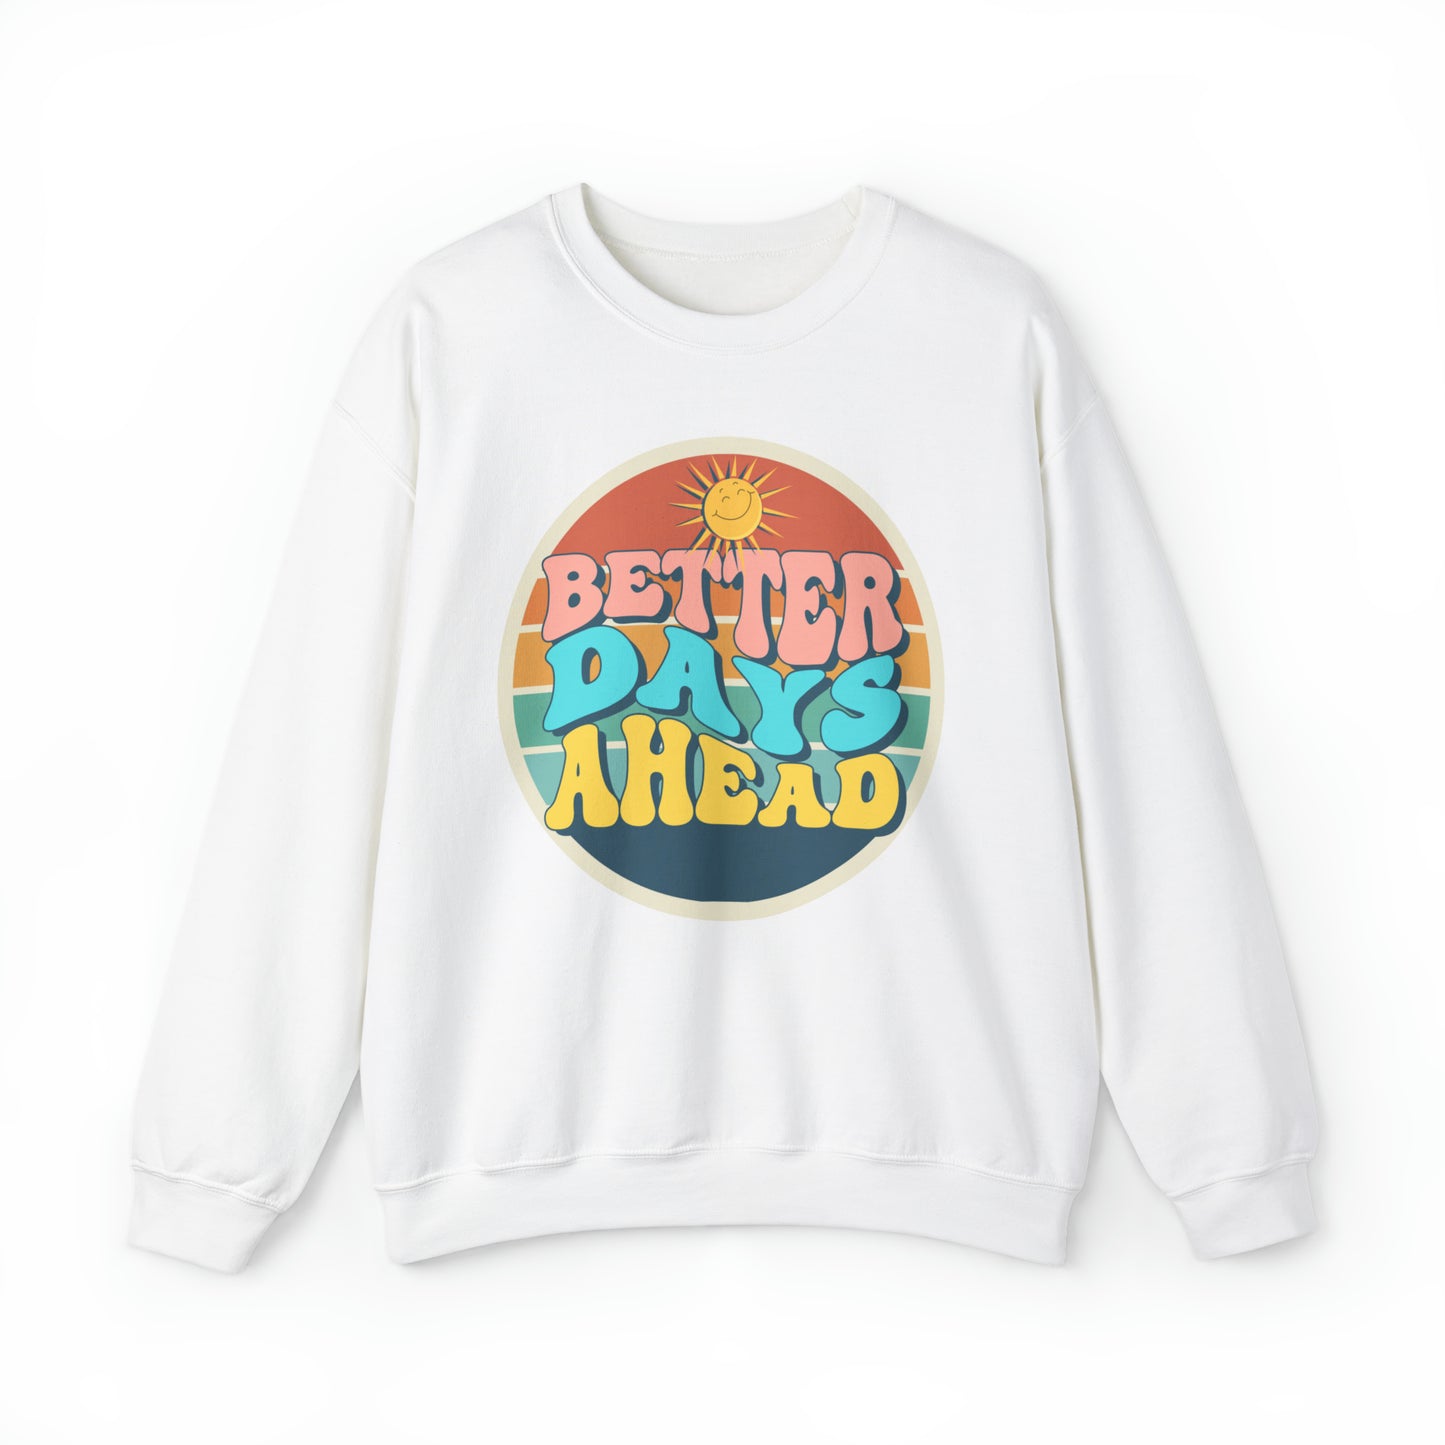 Better Days Ahead Sweatshirt for Women, Sweatshirt for Men, Comfort color Sweatshirt,  Vintage Design Sweatshirt, Gift for Women, Gift for Men